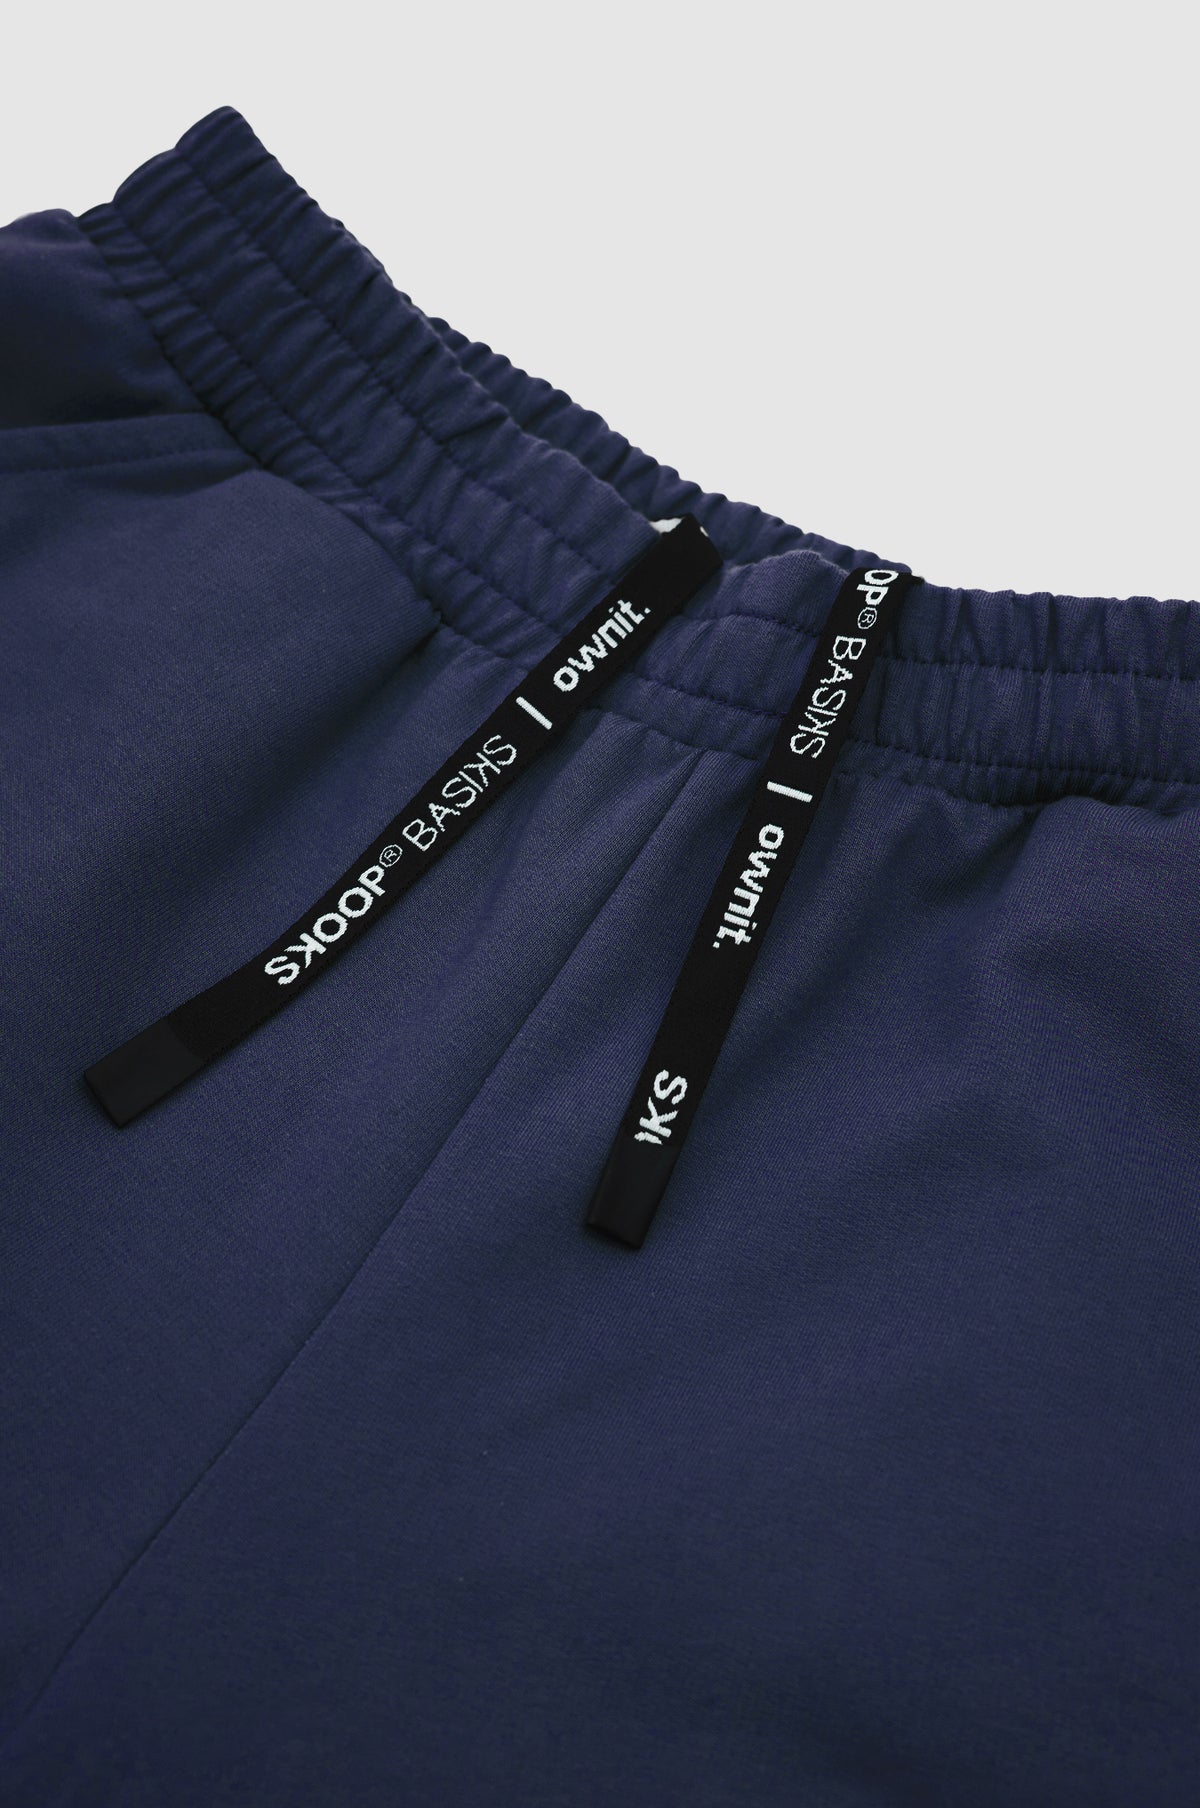 SKOOP® Basiks Shorts Delft Blue | SKOOP Kommunity